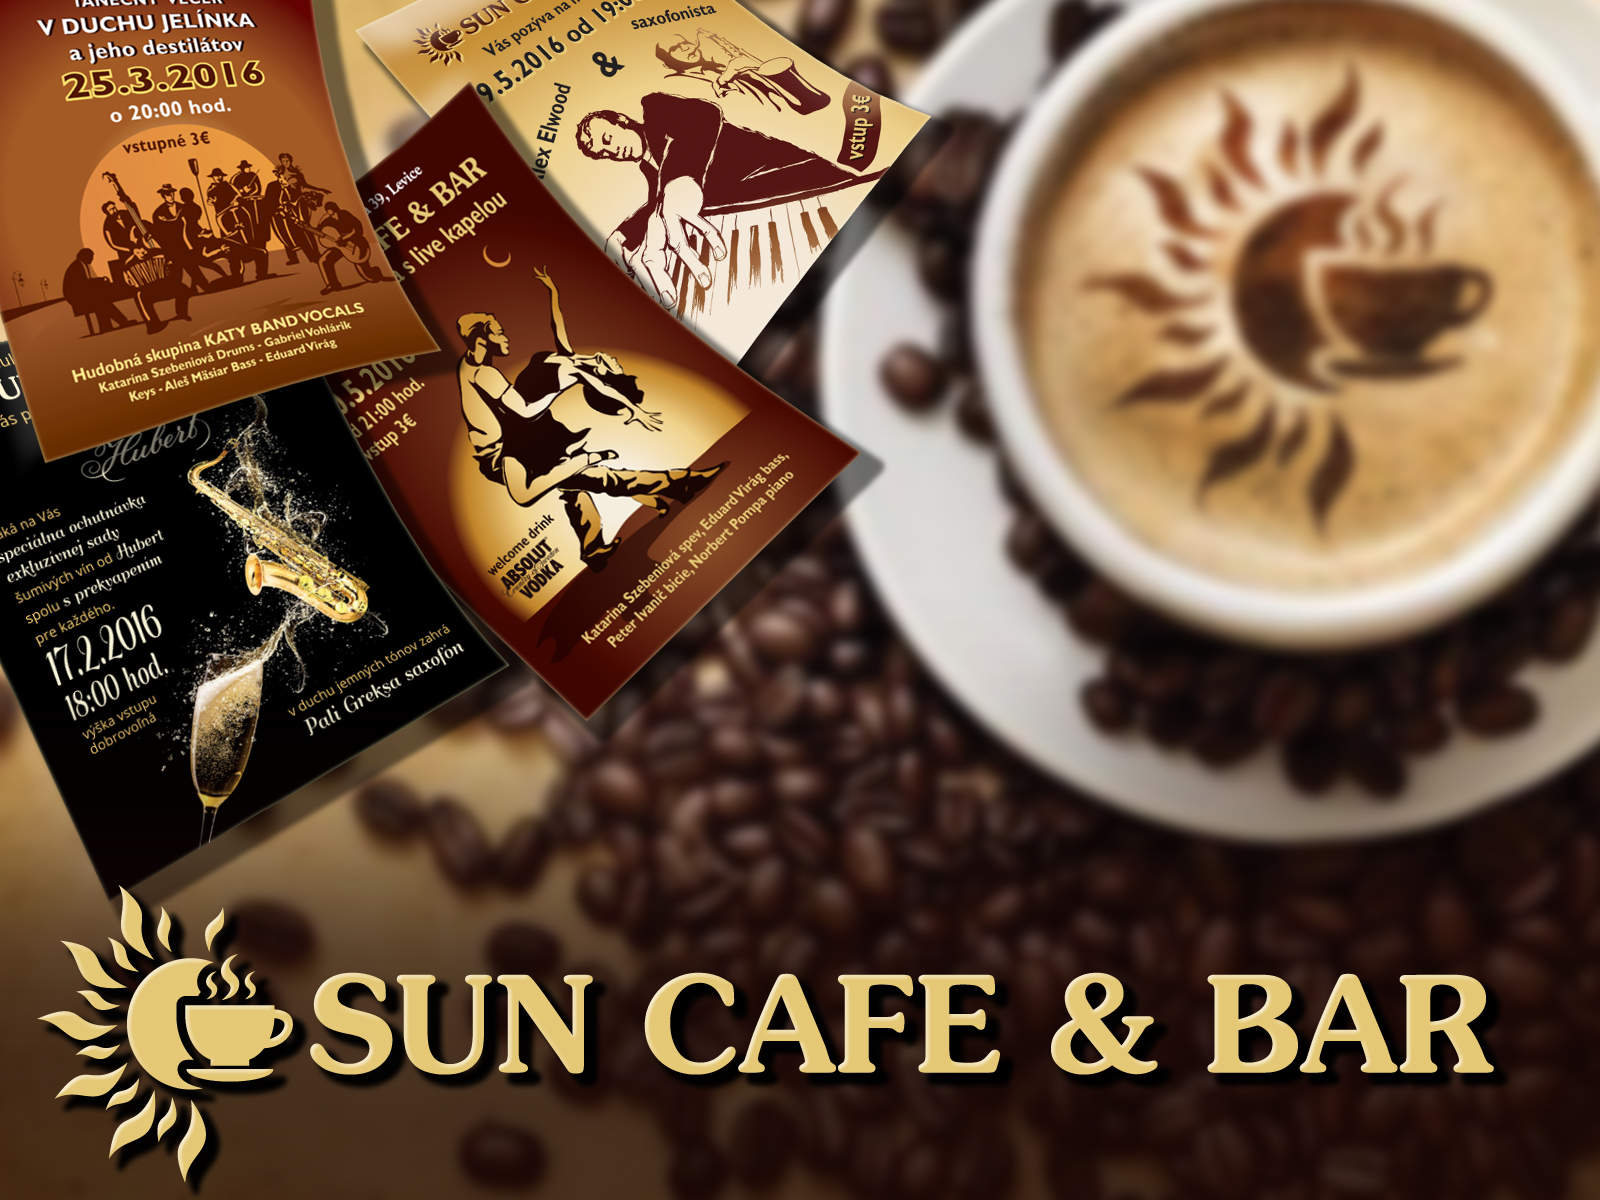 SUN CAFE & BAR